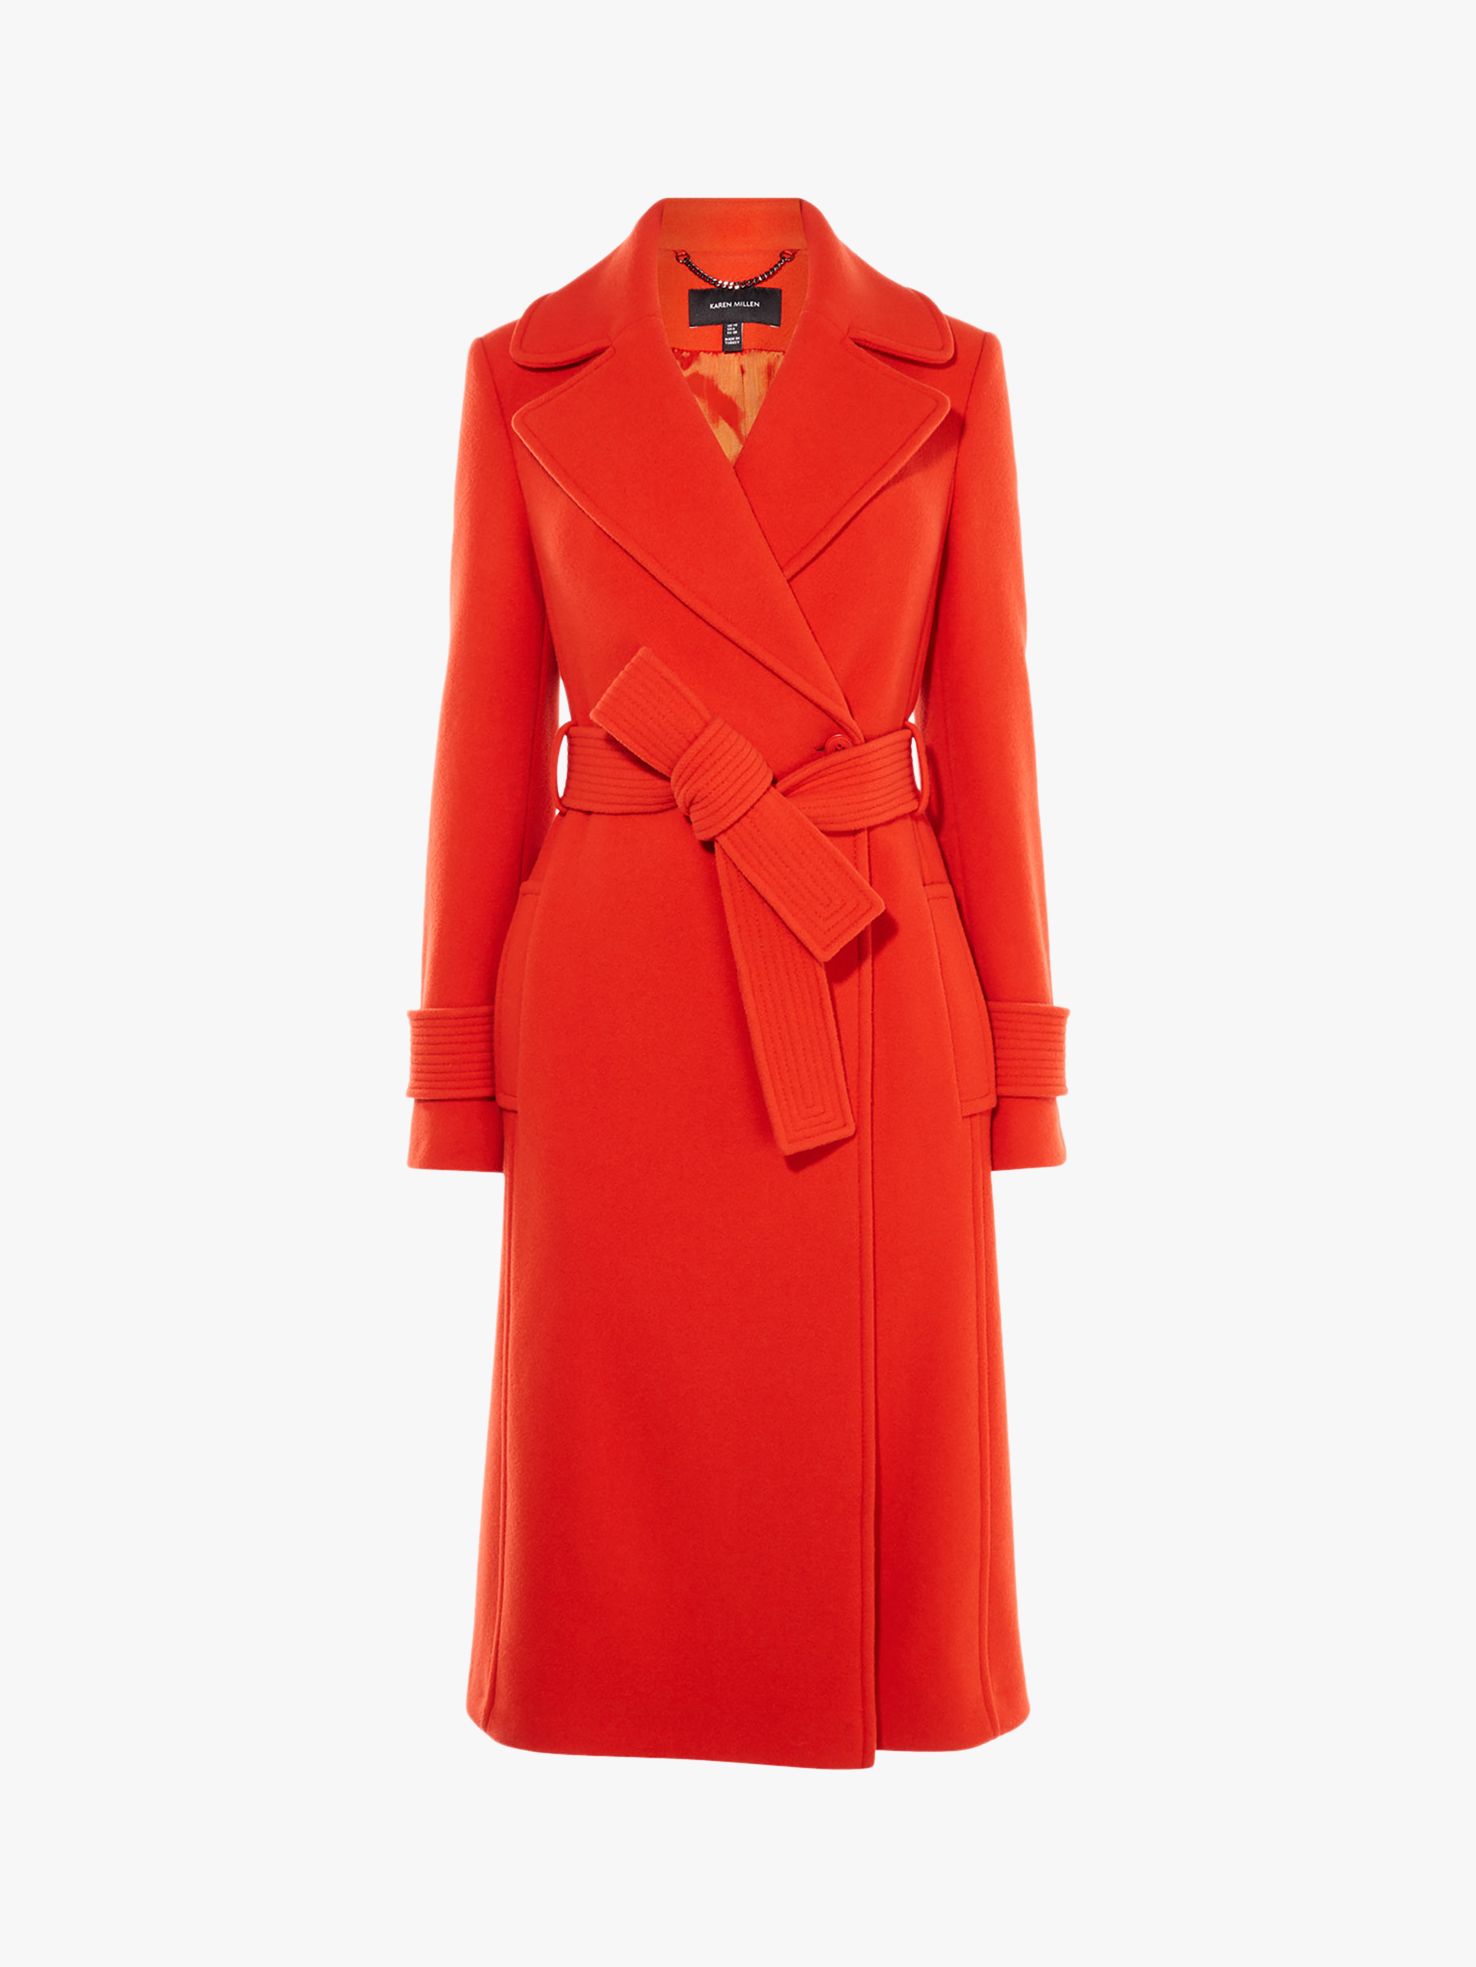 Karen Millen Belted Wrap Coat, Orange